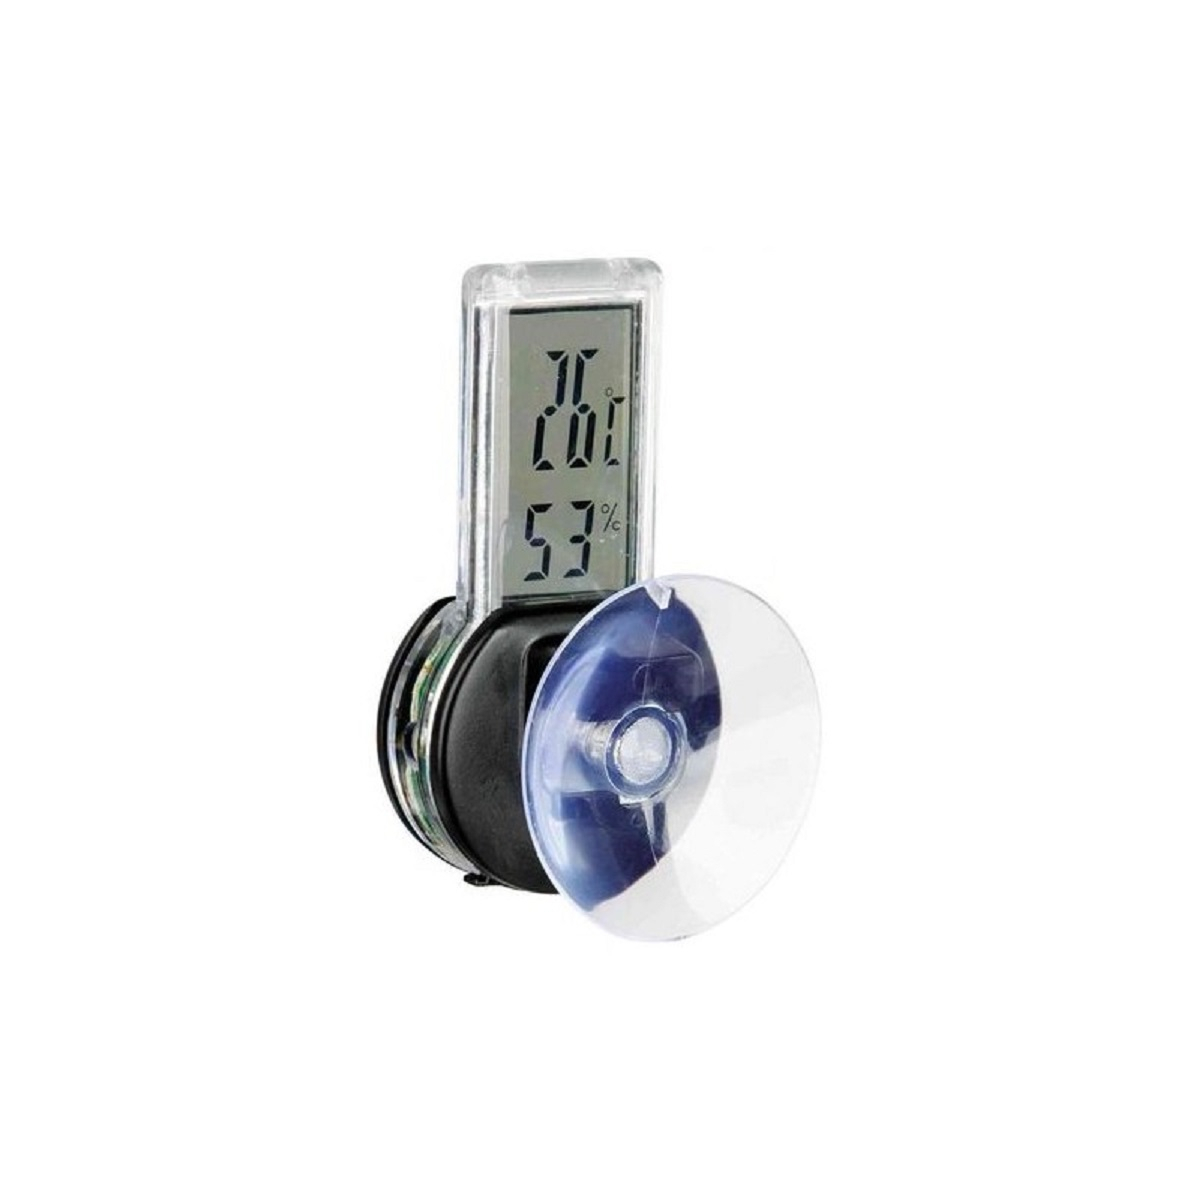 Thermomètre Hygromètre digital pour terrarium avec sonde Trixie Reptiland